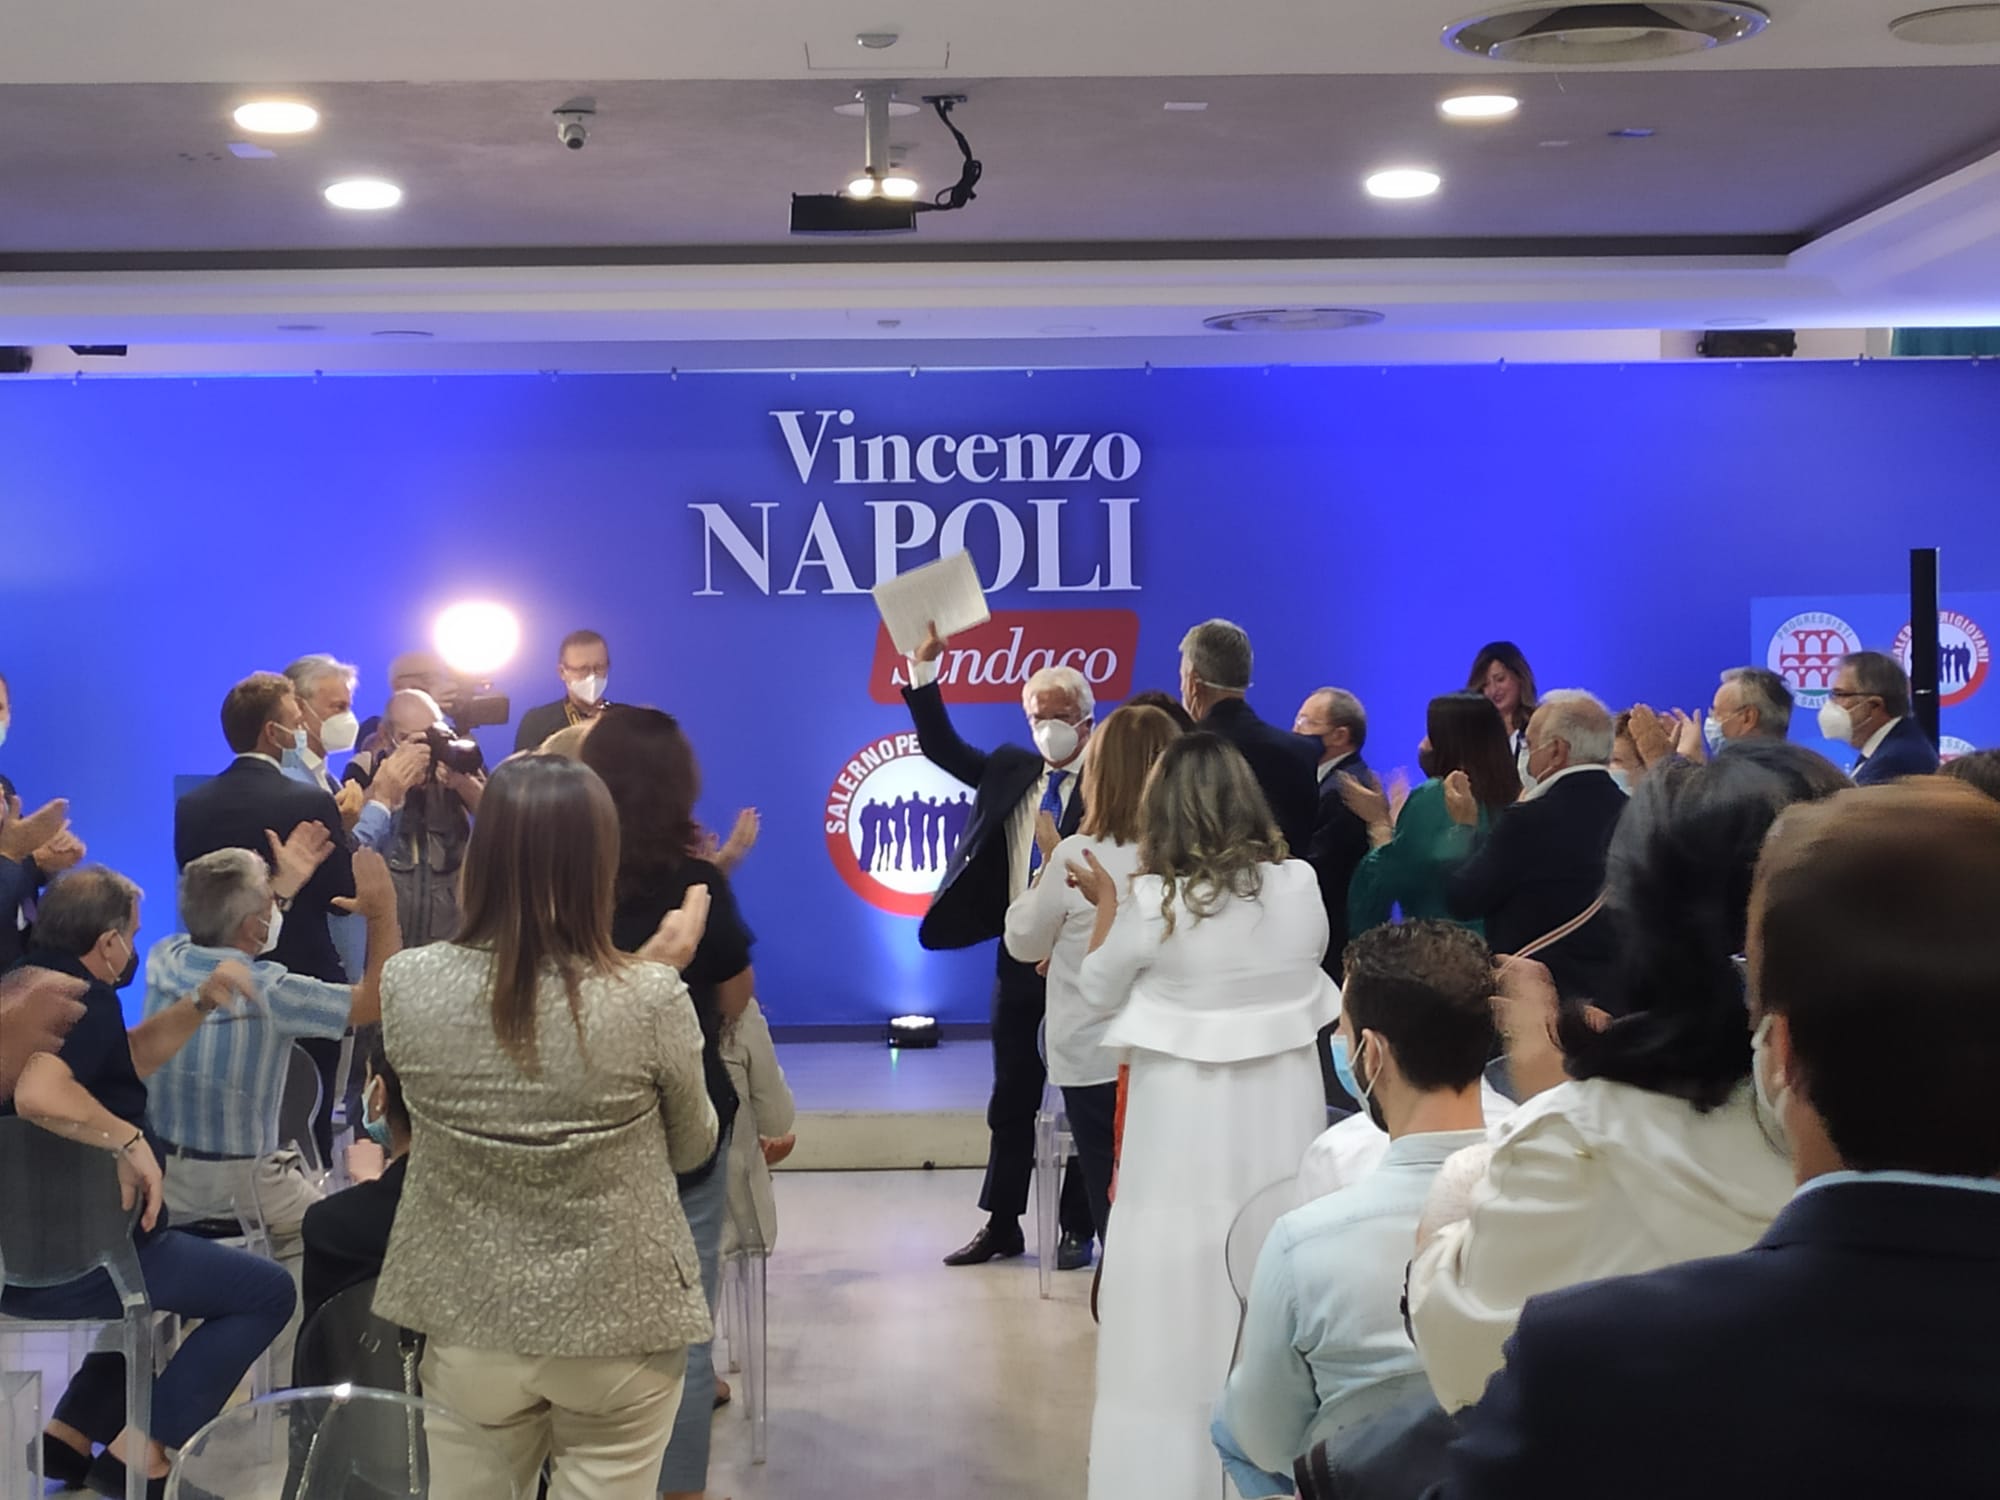 Il Pd presenta le tre liste, Luciano: “Con Enzo Napoli per la continuità amministrativa”